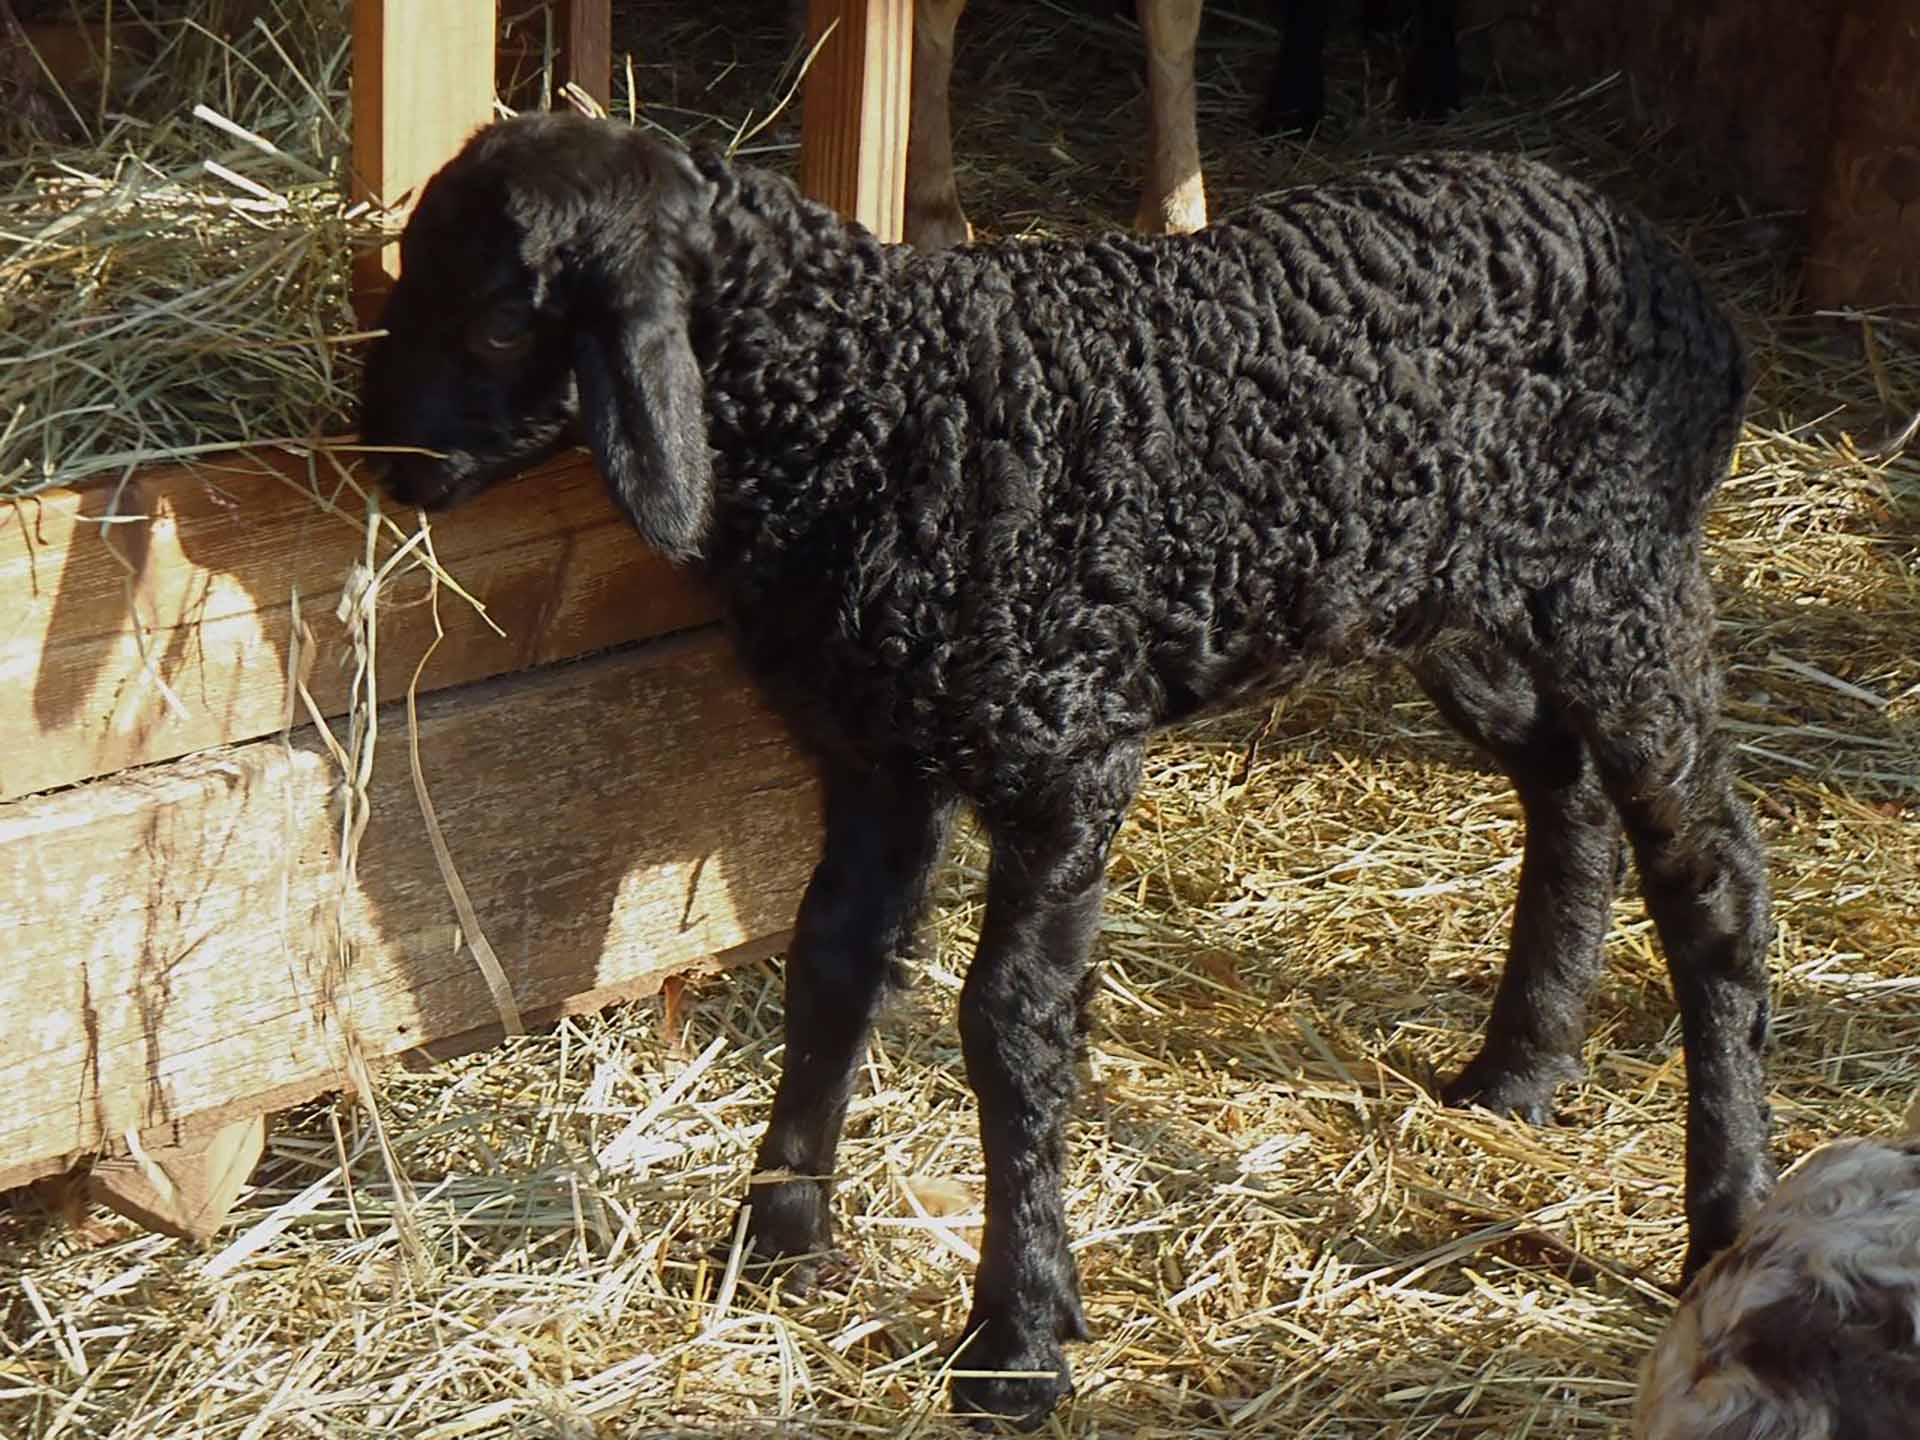 A young karakul sheep feeding on hay.